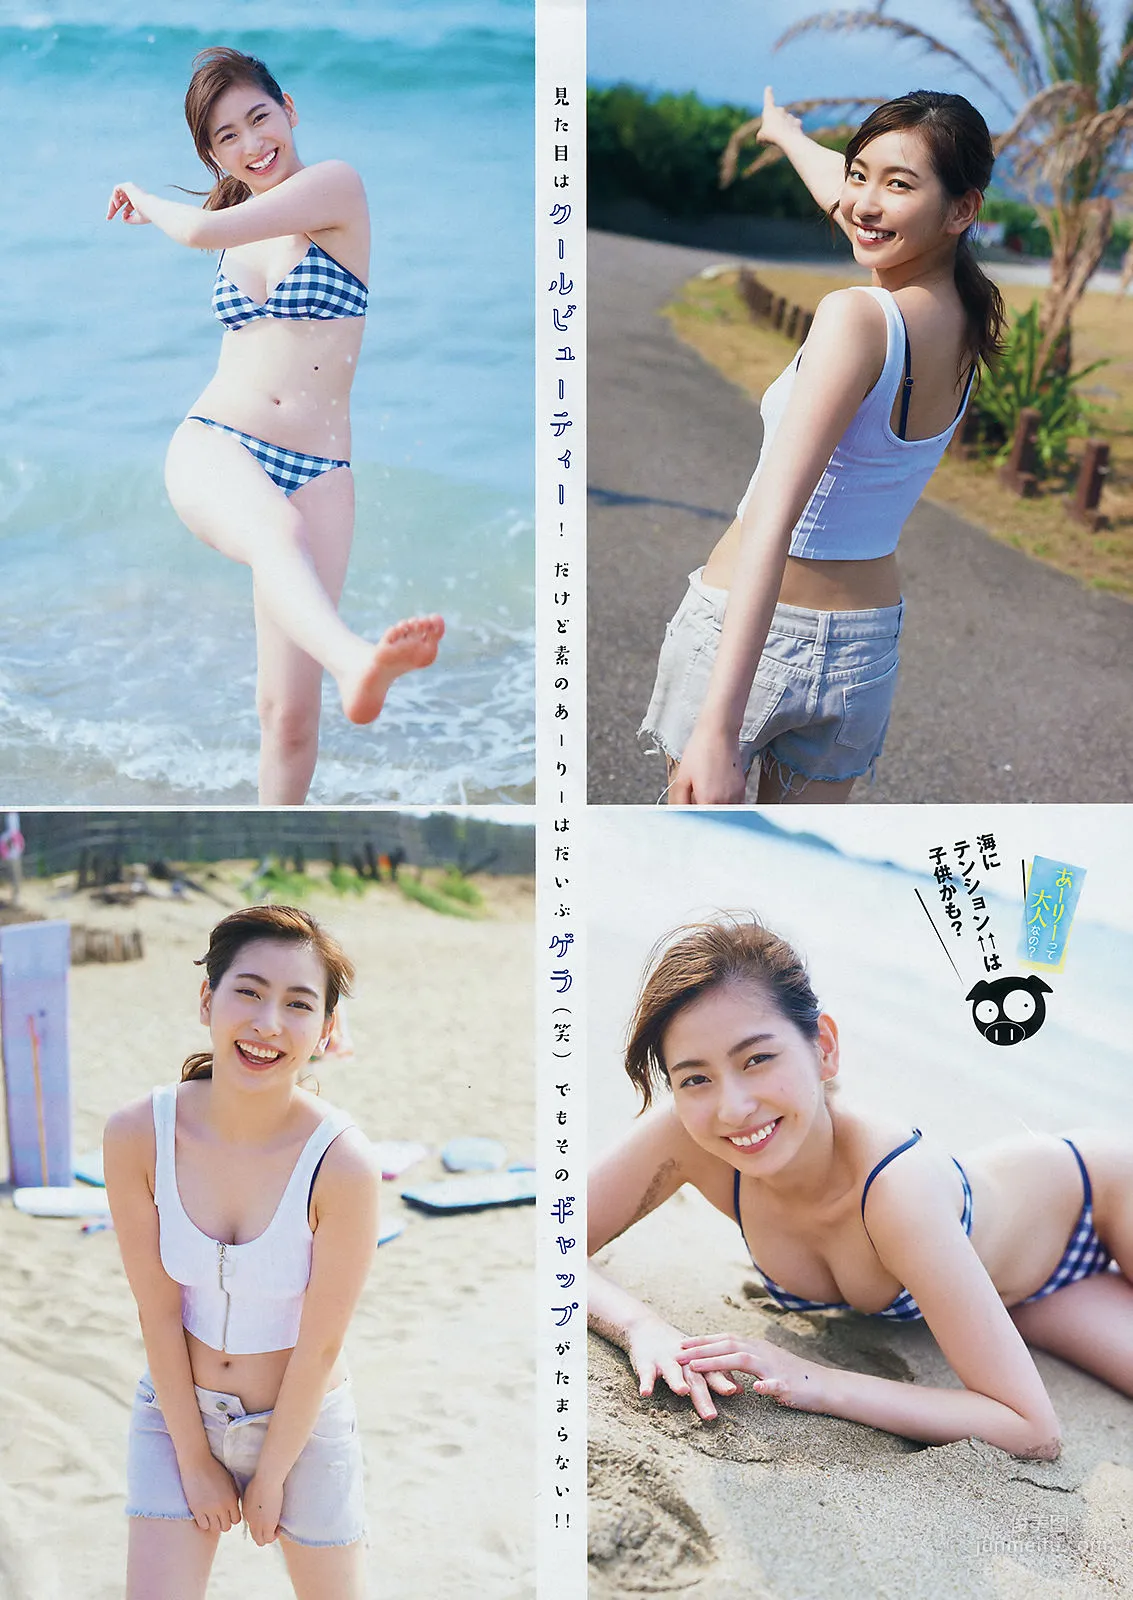 [Young Magazine] 植村あかり 林ゆめ 2018年No.31 写真杂志3